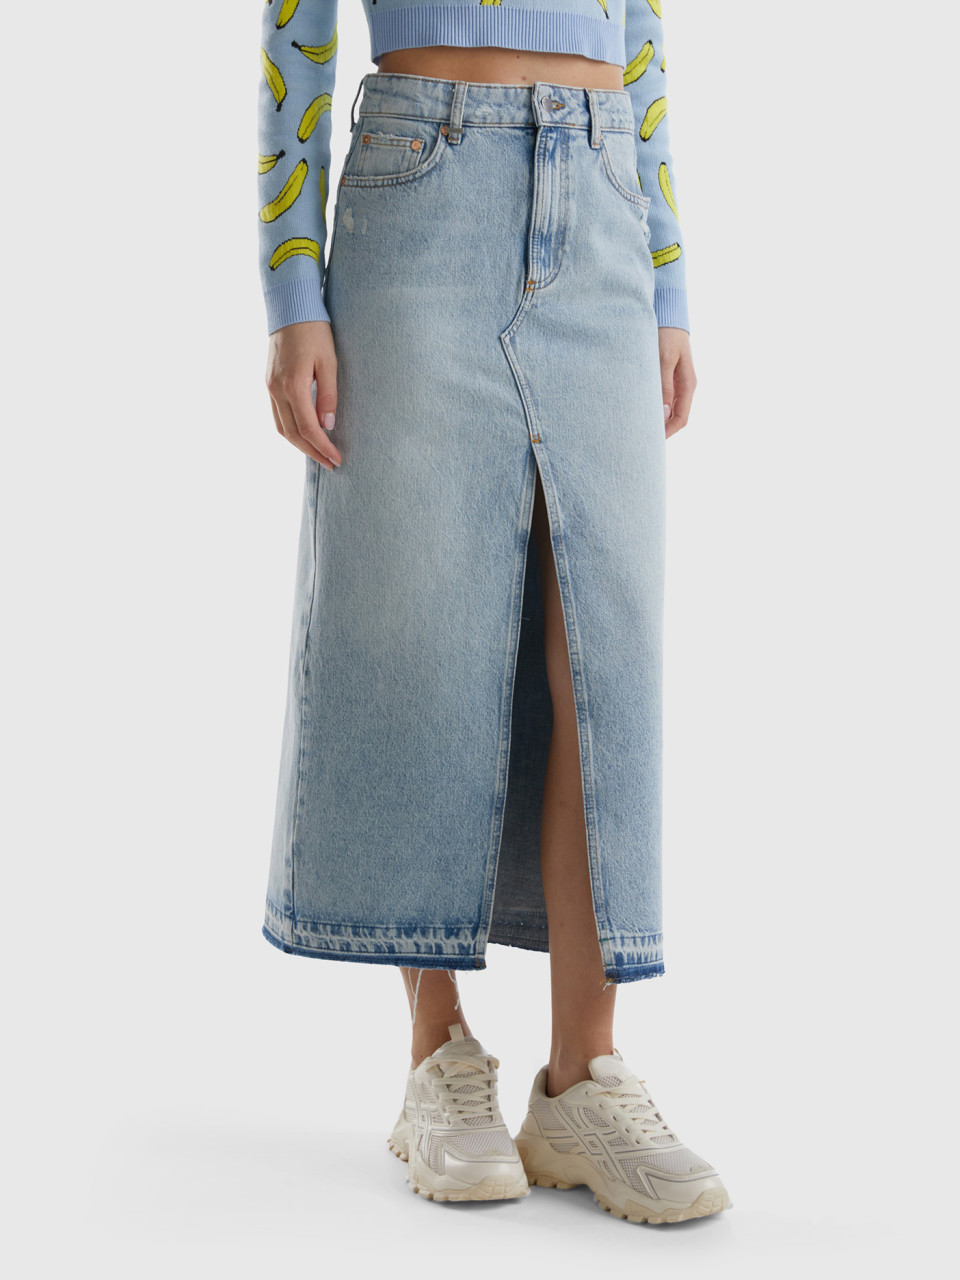 Benetton, Long Denim Skirt, Light Blue, Women